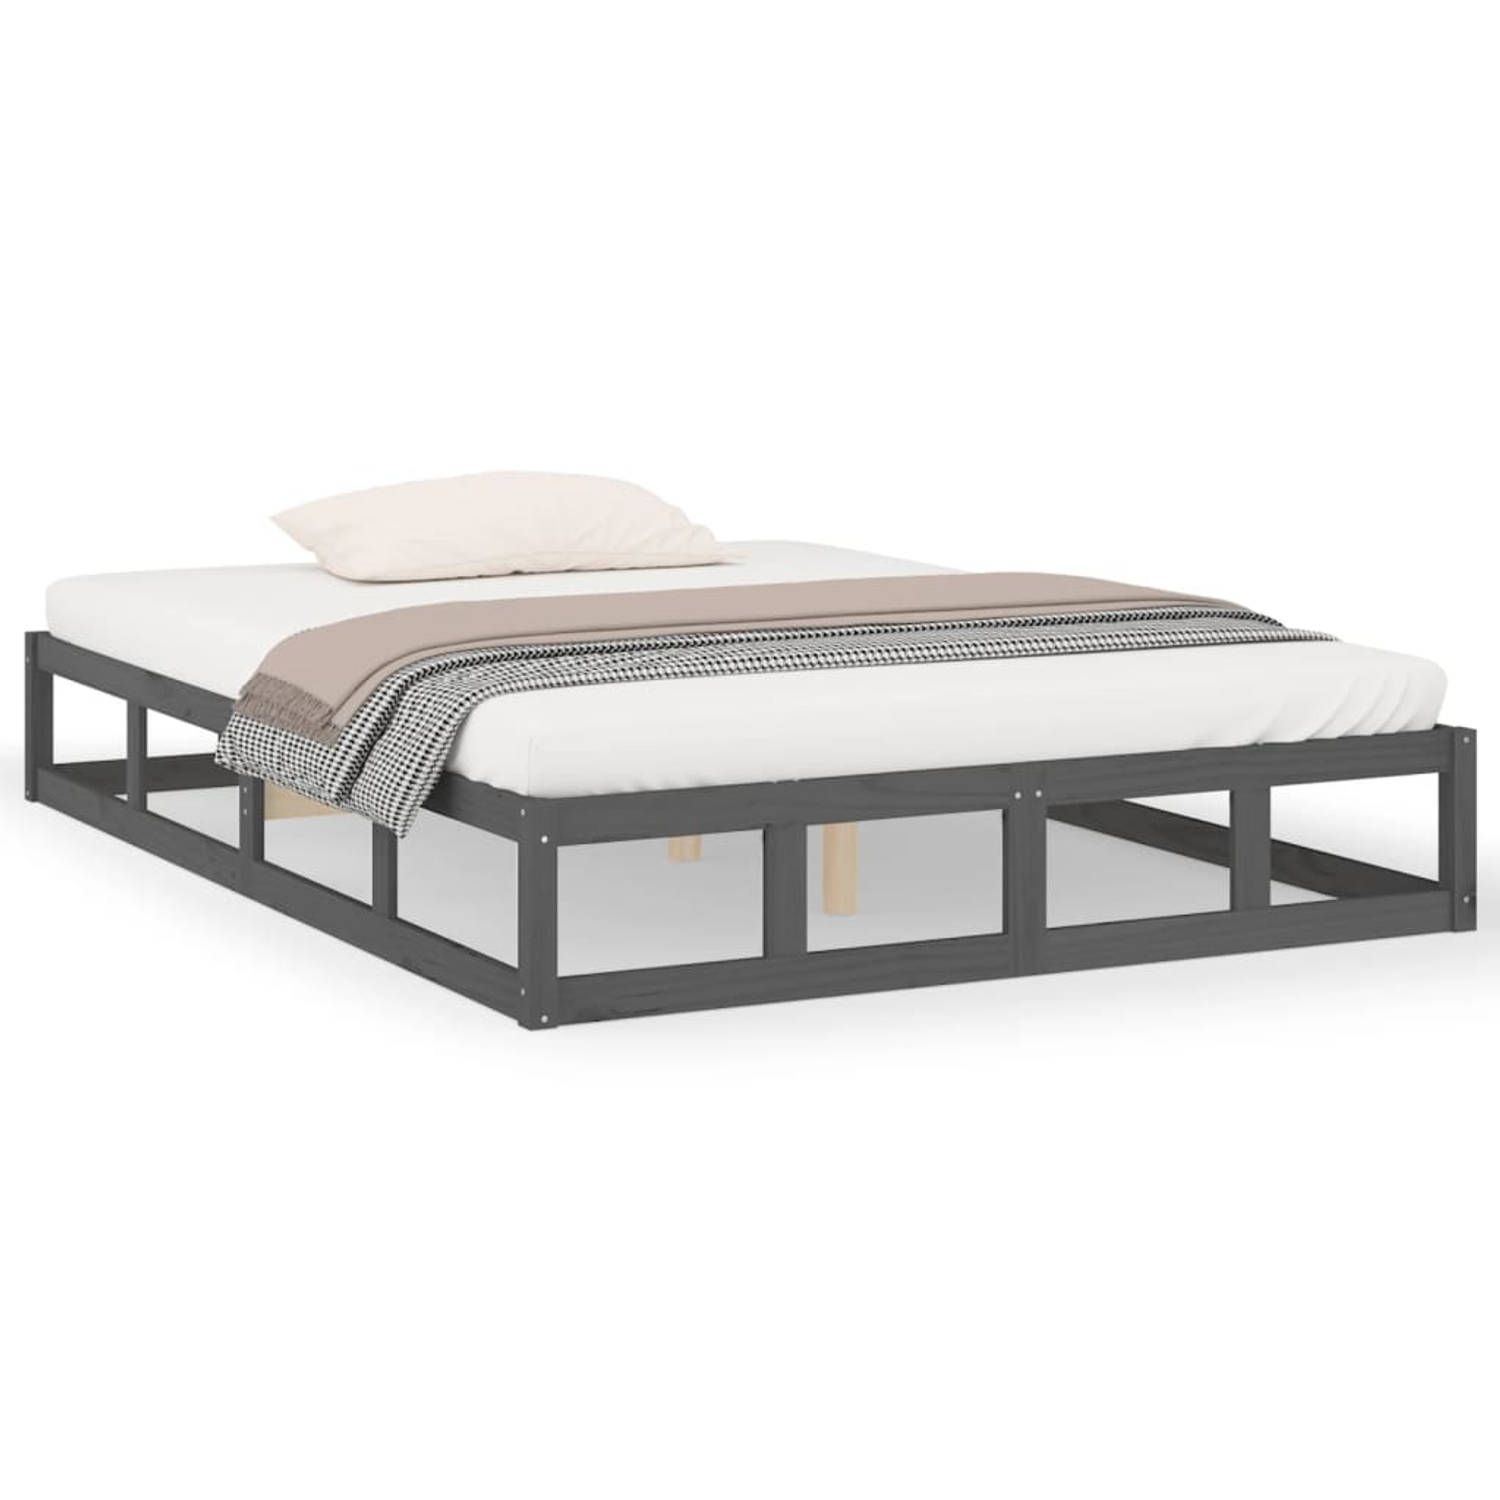 The Living Store Bedframe massief hout grijs 135x190 cm 4FT6 Double - Bedframe - Bedframes - Bed - Bedbodem - Ledikant - Bed Frame - Massief Houten Bedframe - Slaapmeubel - Tweeper